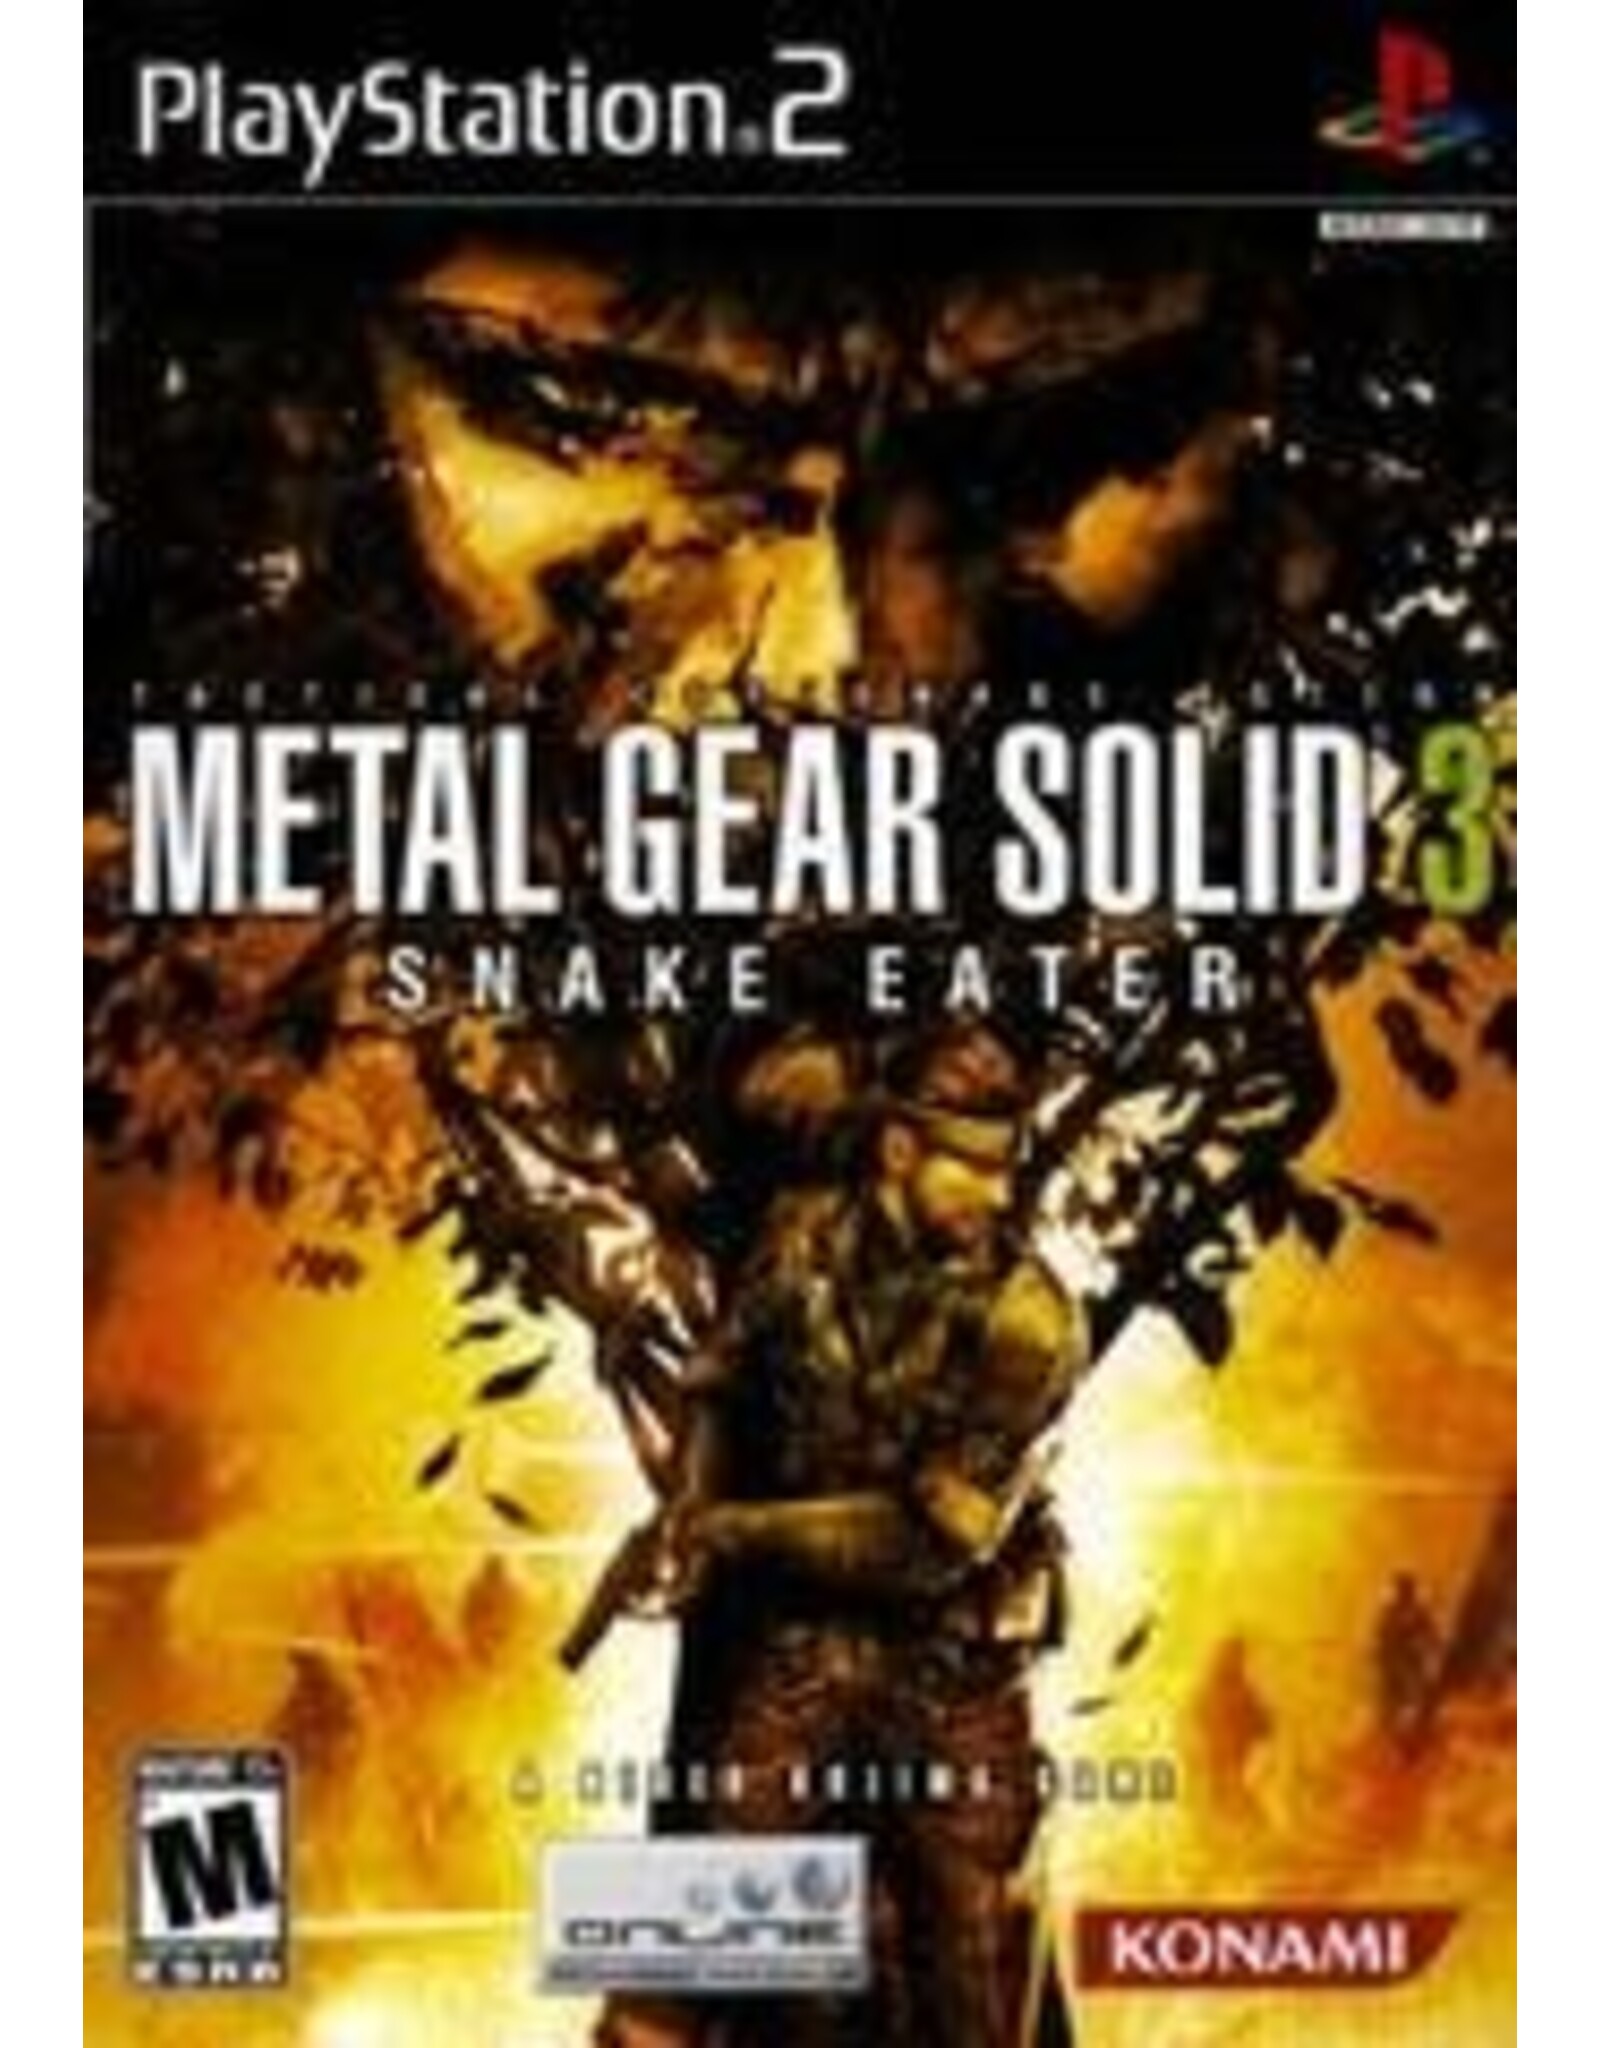 Playstation 2 Metal Gear Solid 3 Snake Eater (Brand New, Lightly Damaged Shrinkwrap)